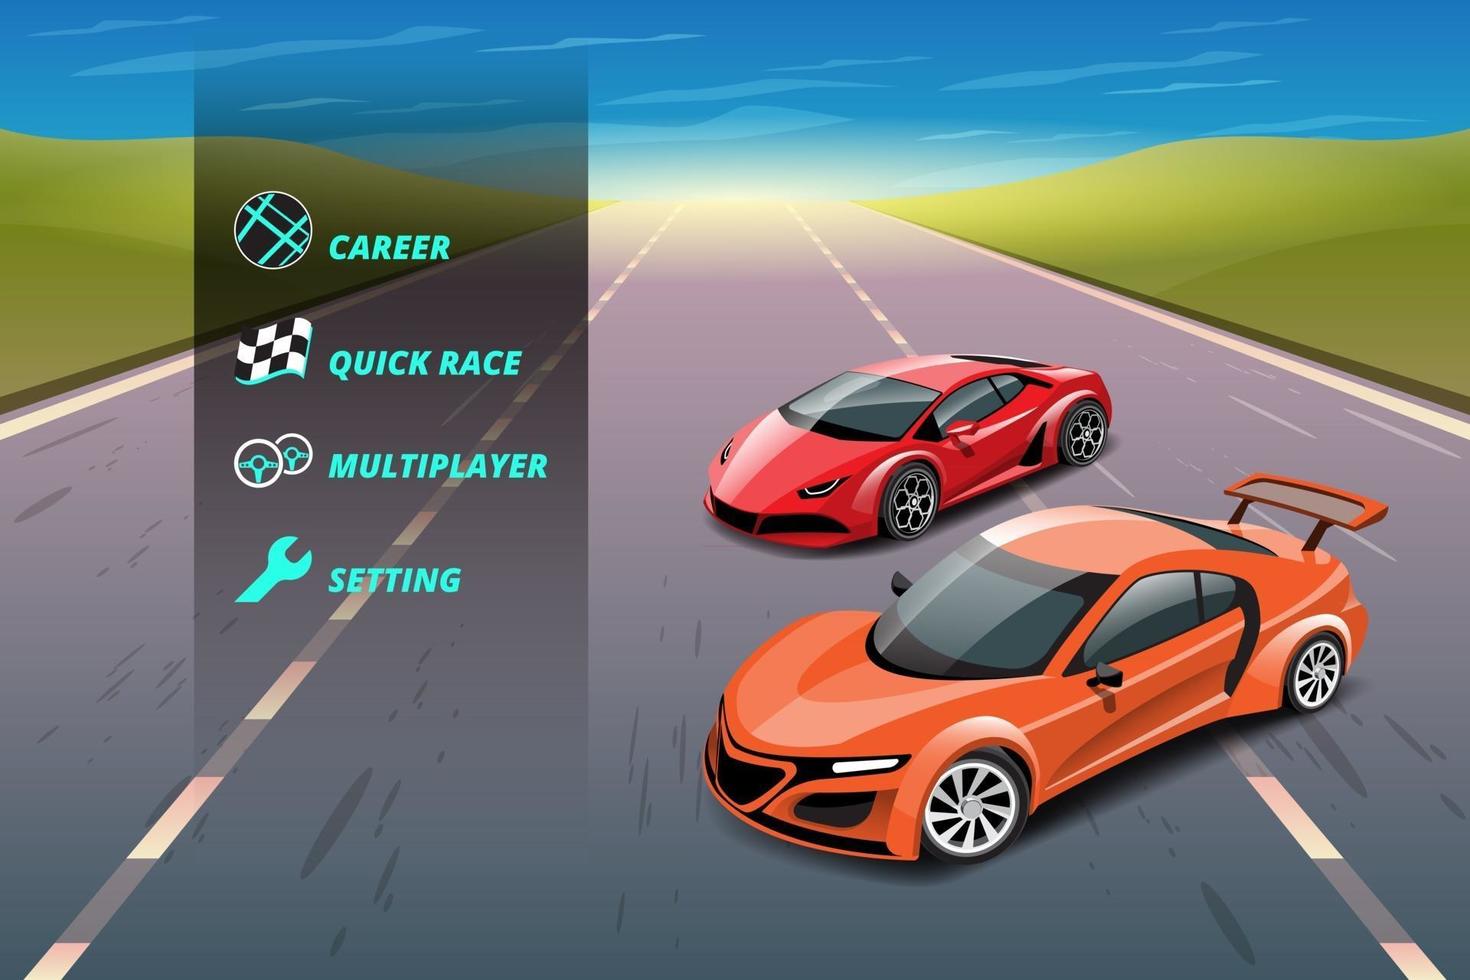 juego de carreras de coches en el menú de visualización para mejorar el rendimiento del coche del jugador del juego. vector